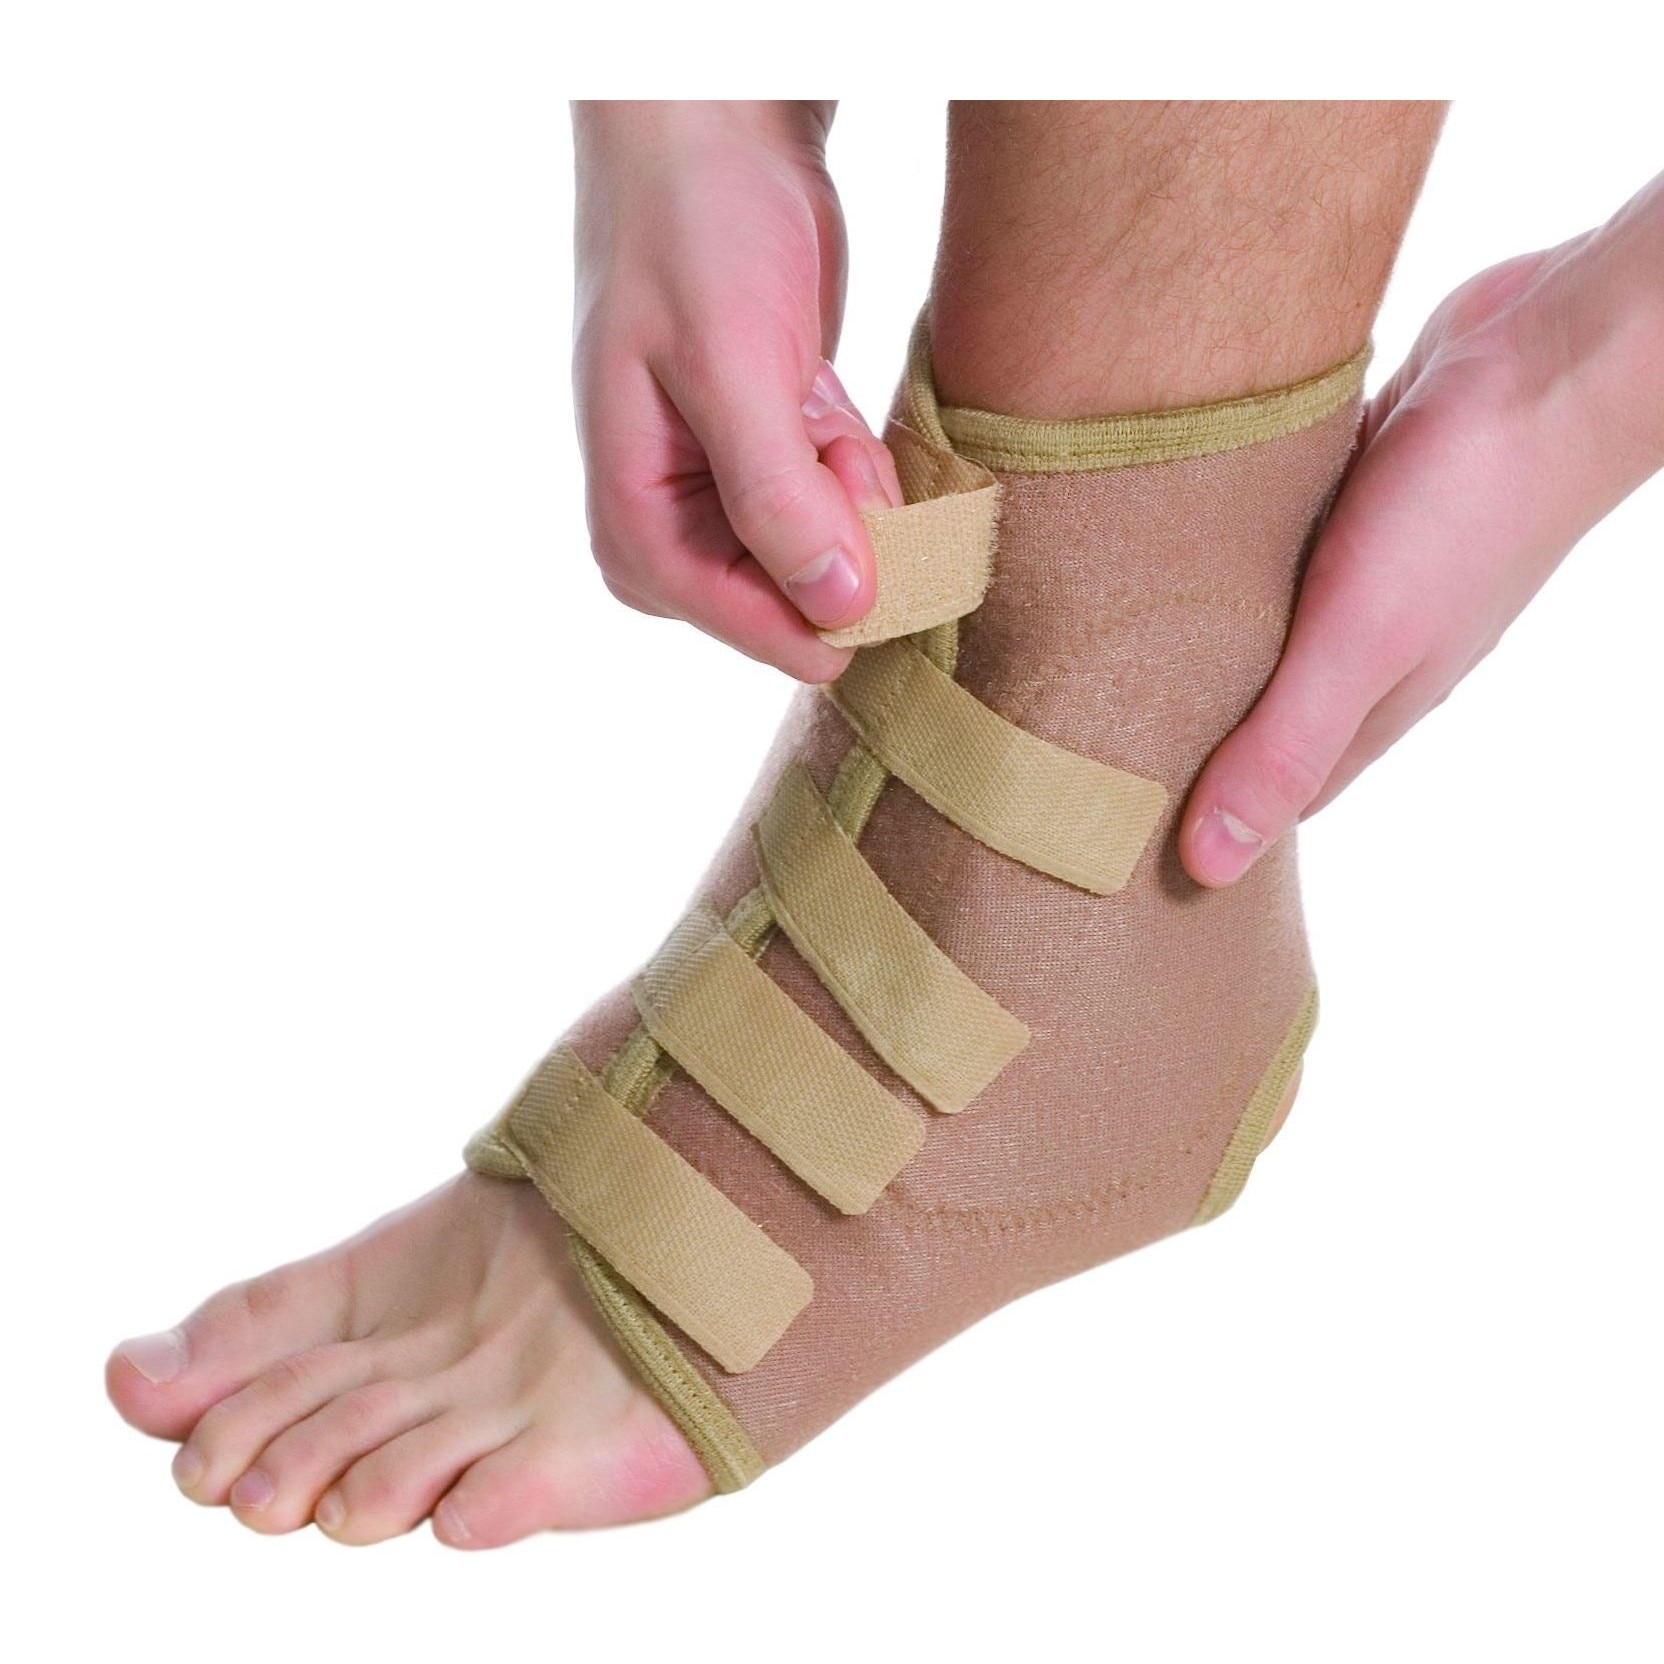 dureri articulare la nivelul umerilor și genunchilor durere în călcâiele gleznei